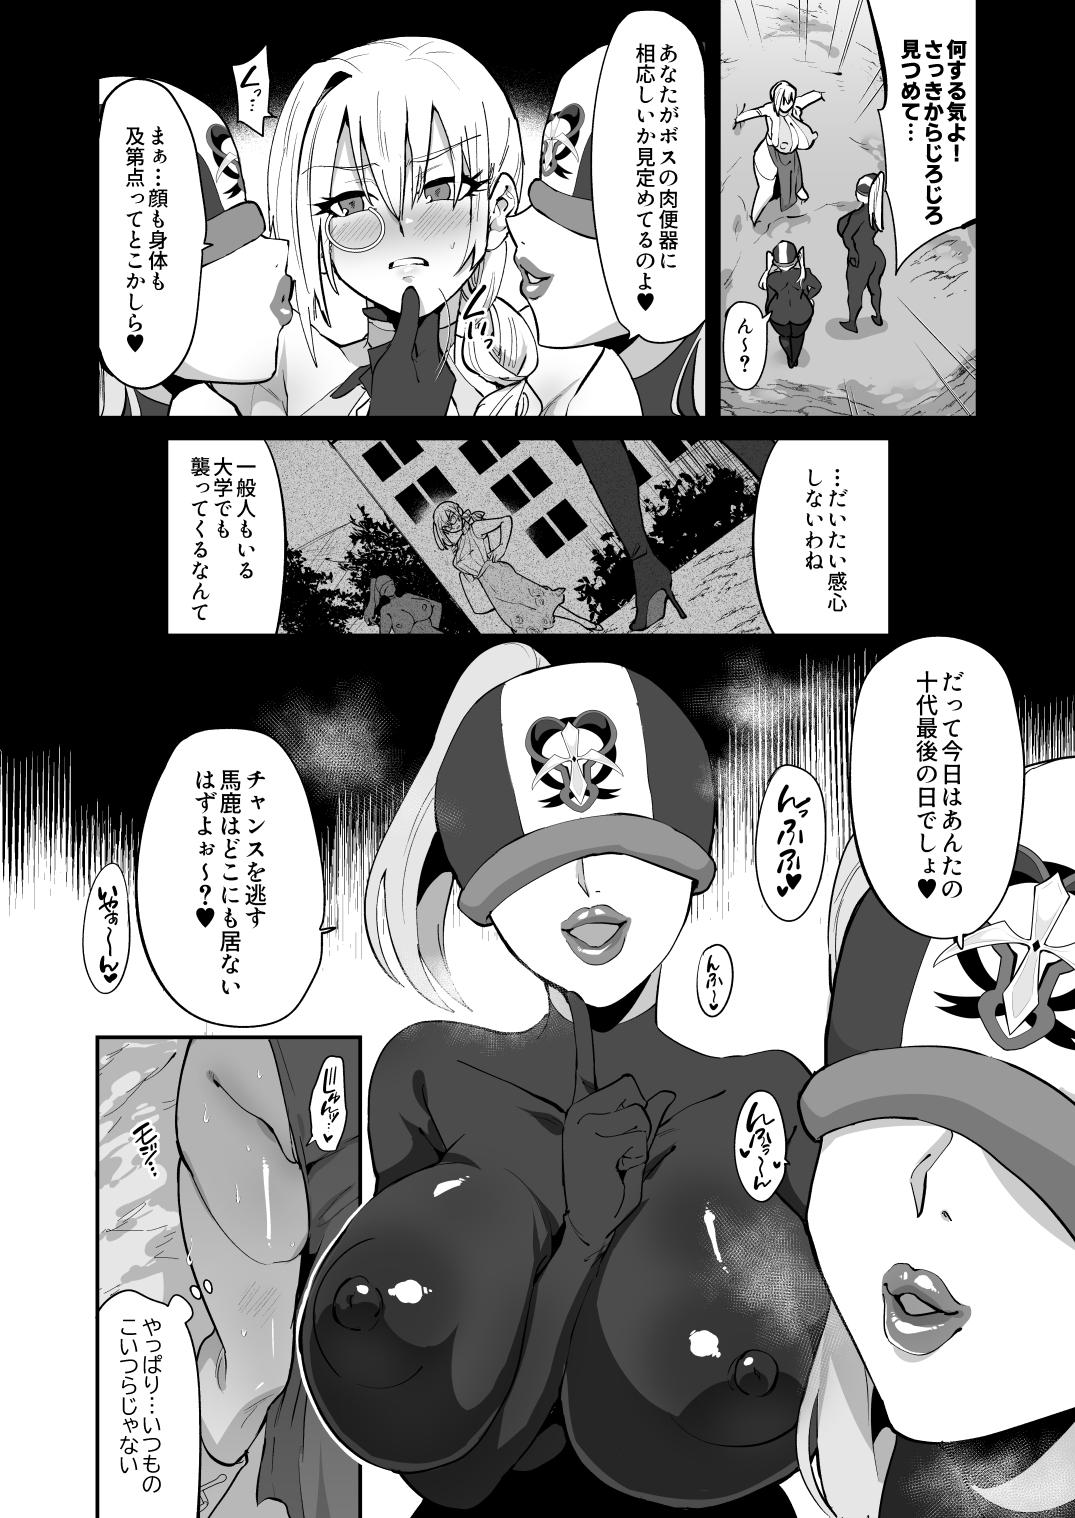 Magical Girl vs Futanari Combatant Sisters 4